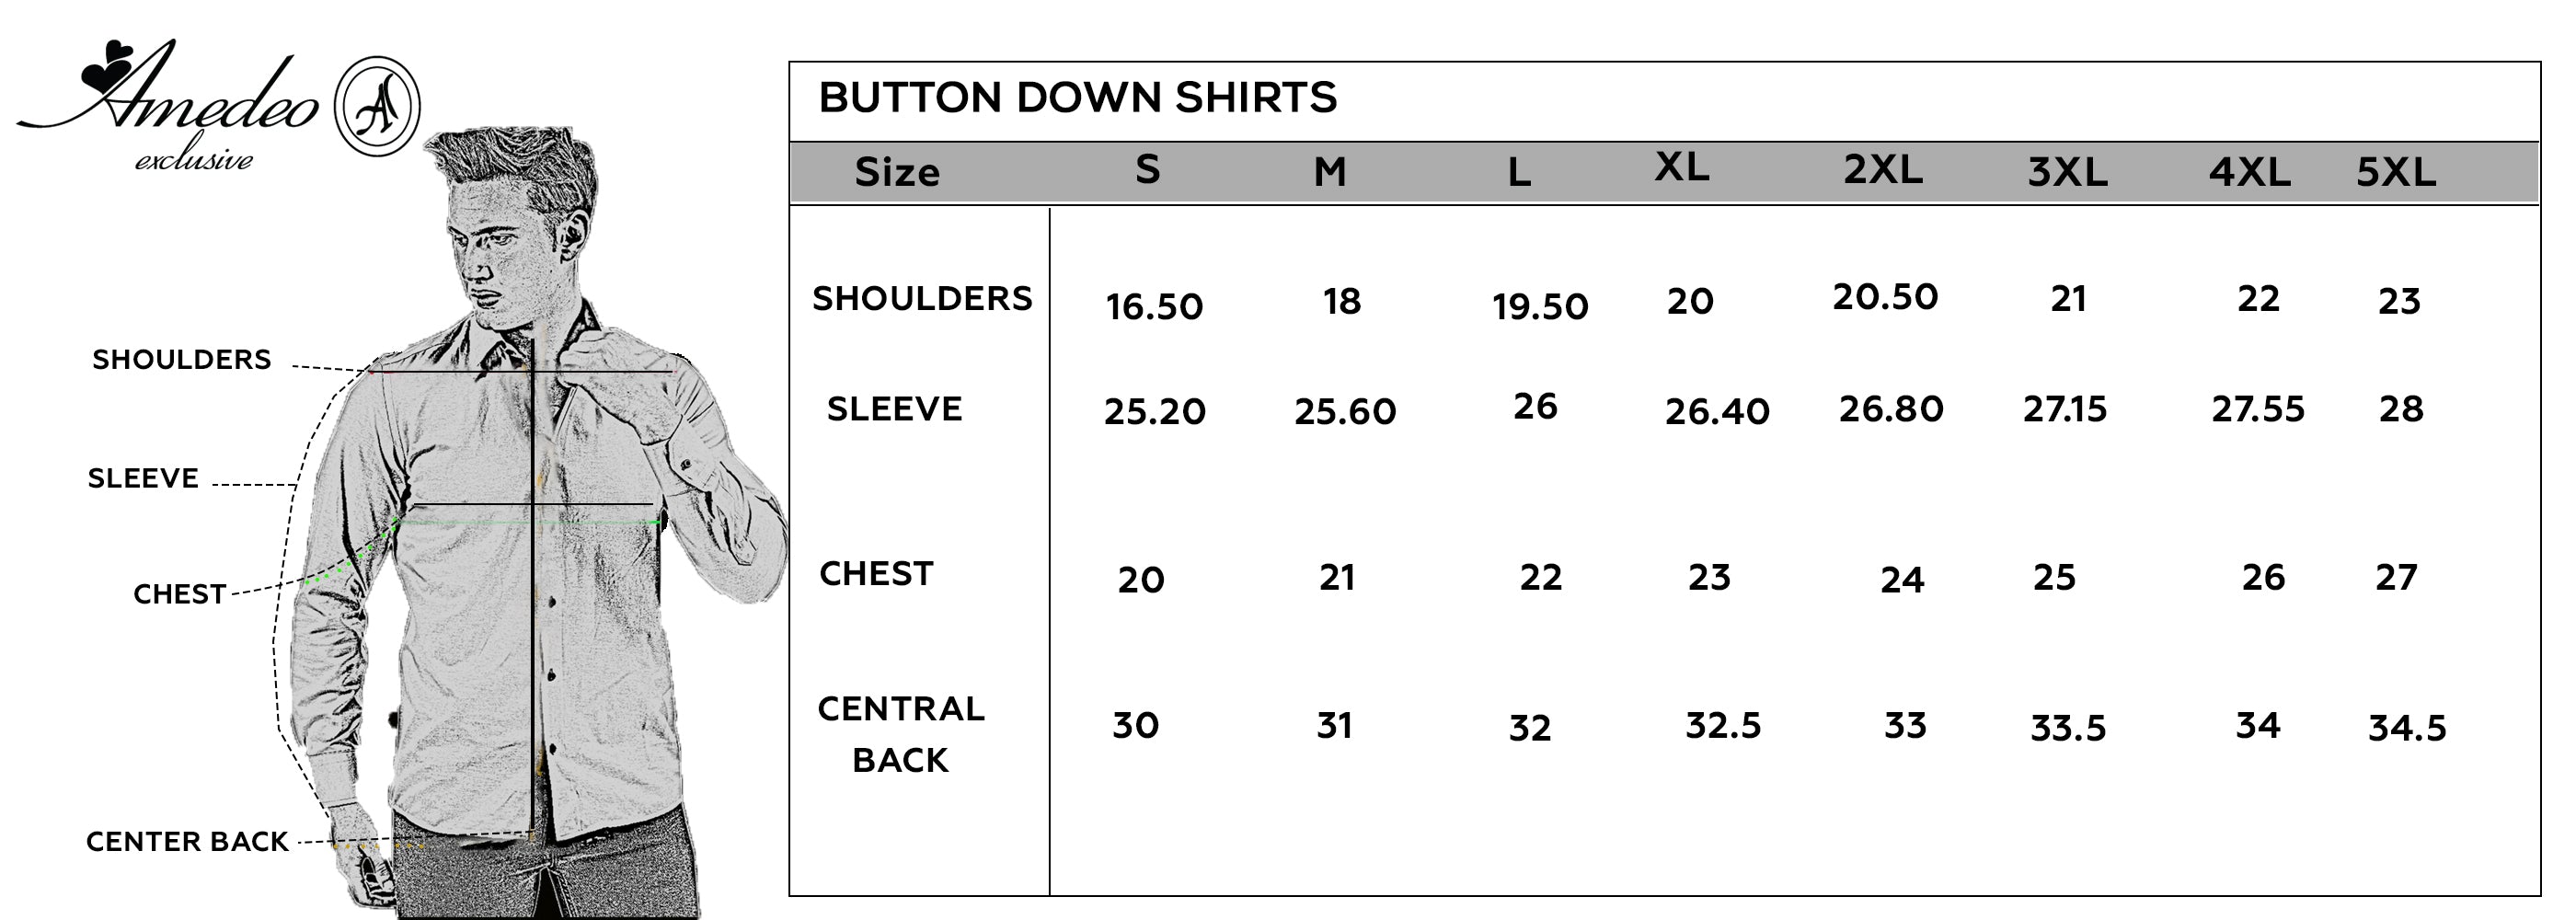 men’s dress shirt sizes chart